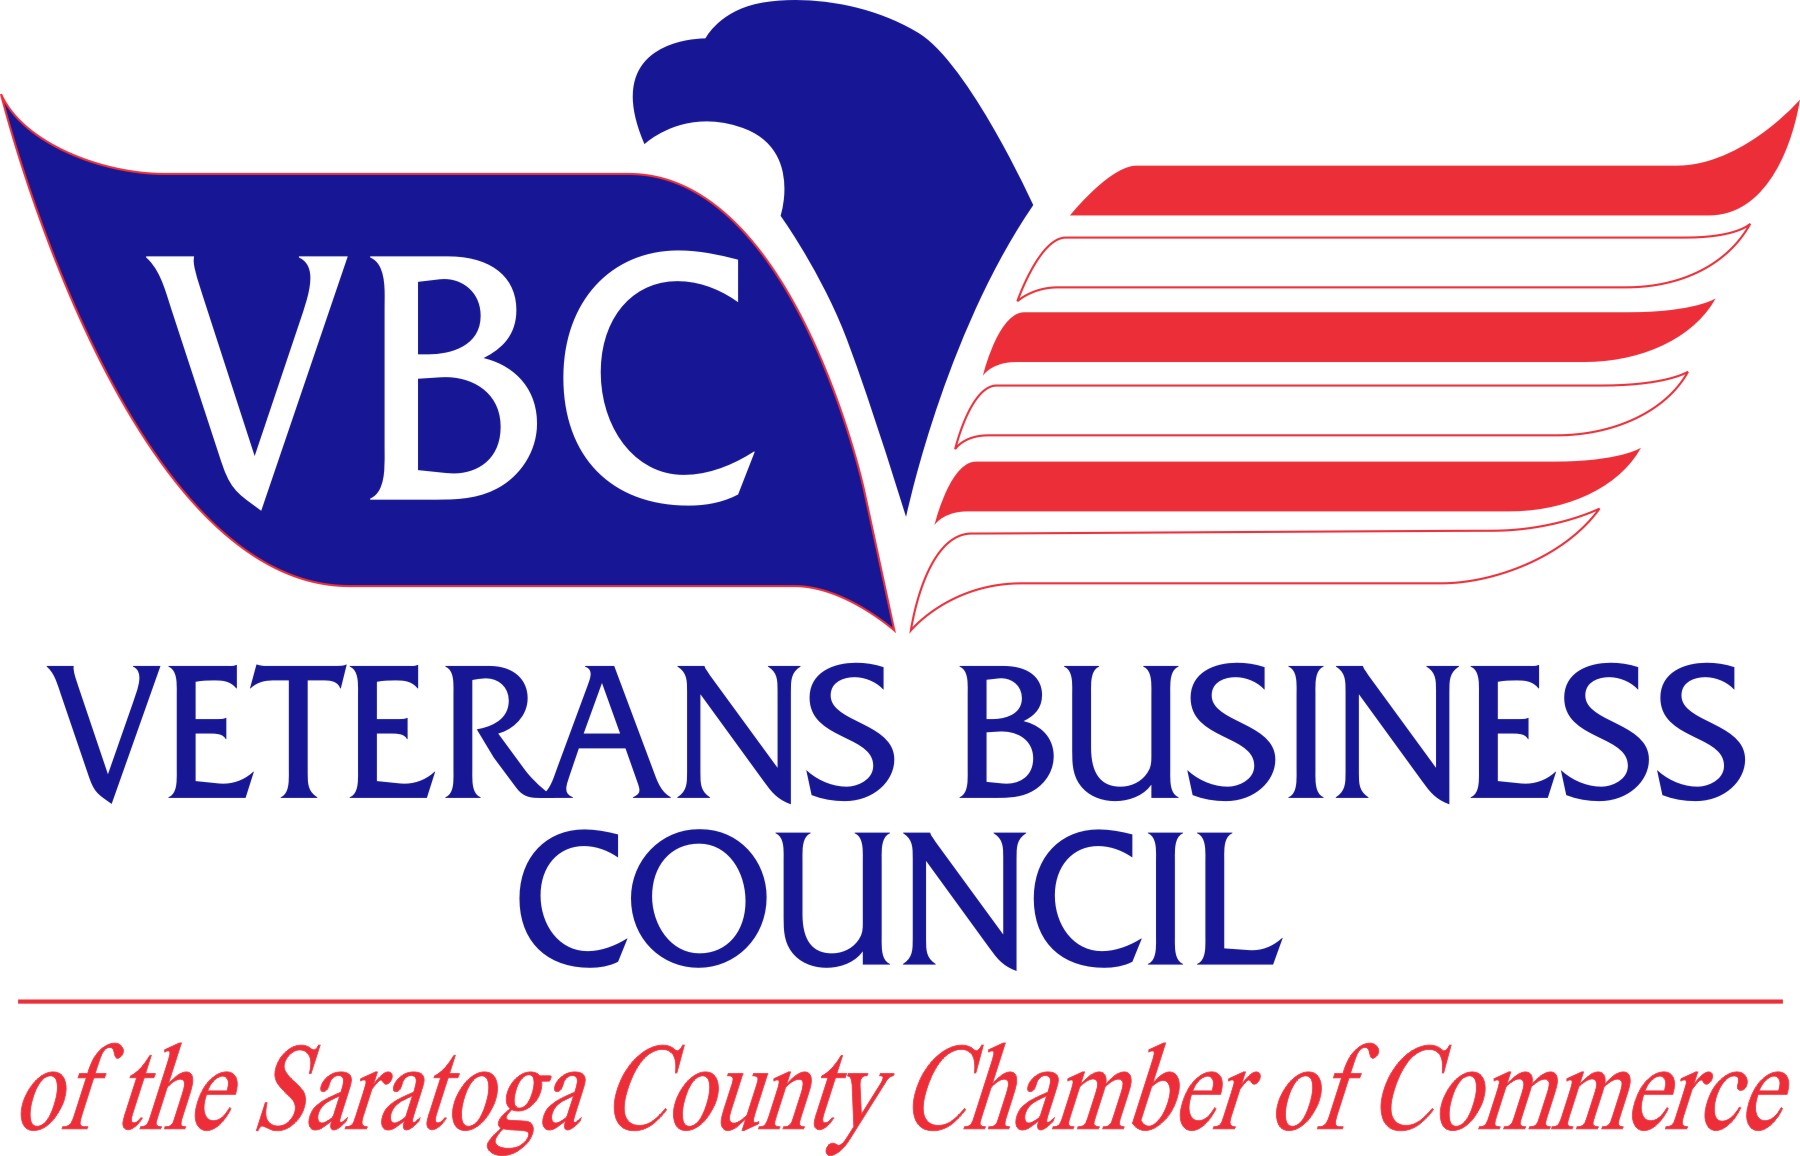 Veterans Business Council